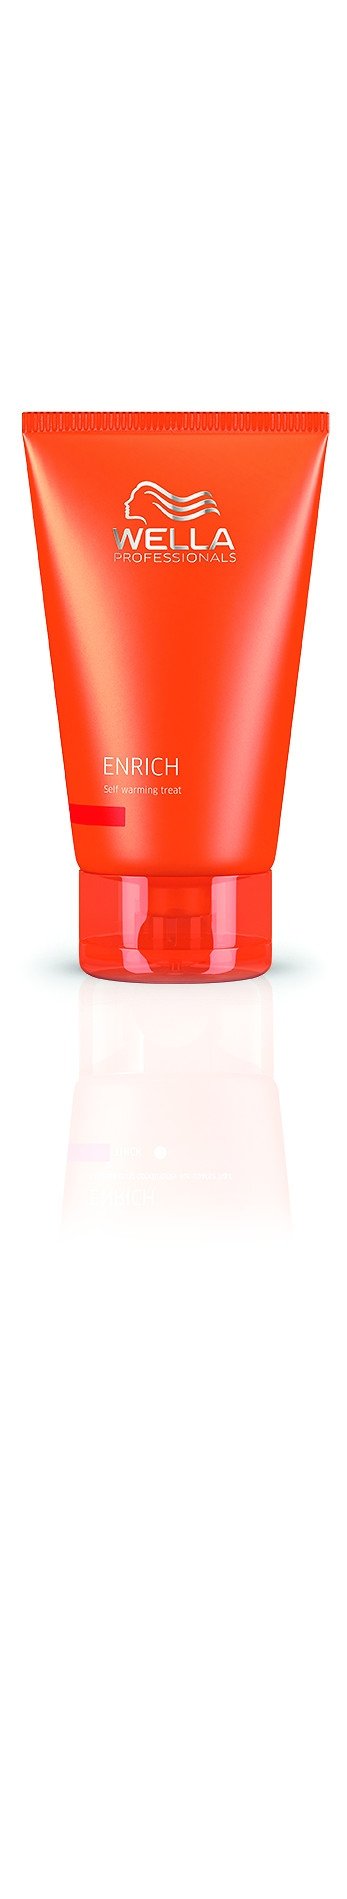 Маски для волос:  Wella Professionals -  Самонагревающаяся питательная маска Enrich (150 мл)